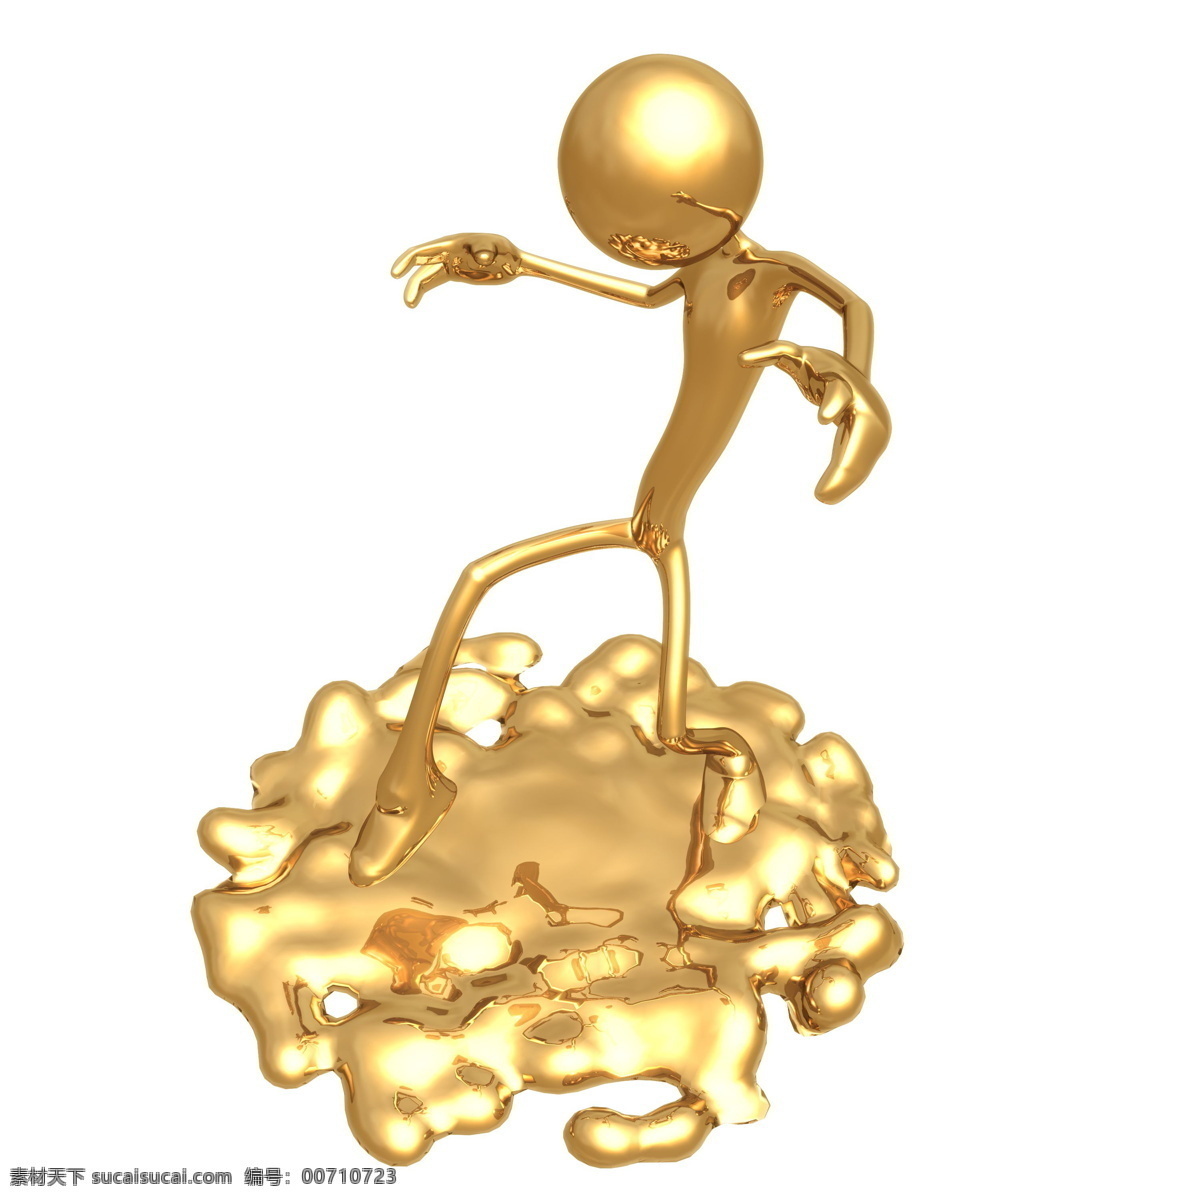 玩具 金色世界 喻 意 金人 广告素材 设计素材 小金人 形象设计 金人设计 喻意金人 喻意 商务金融